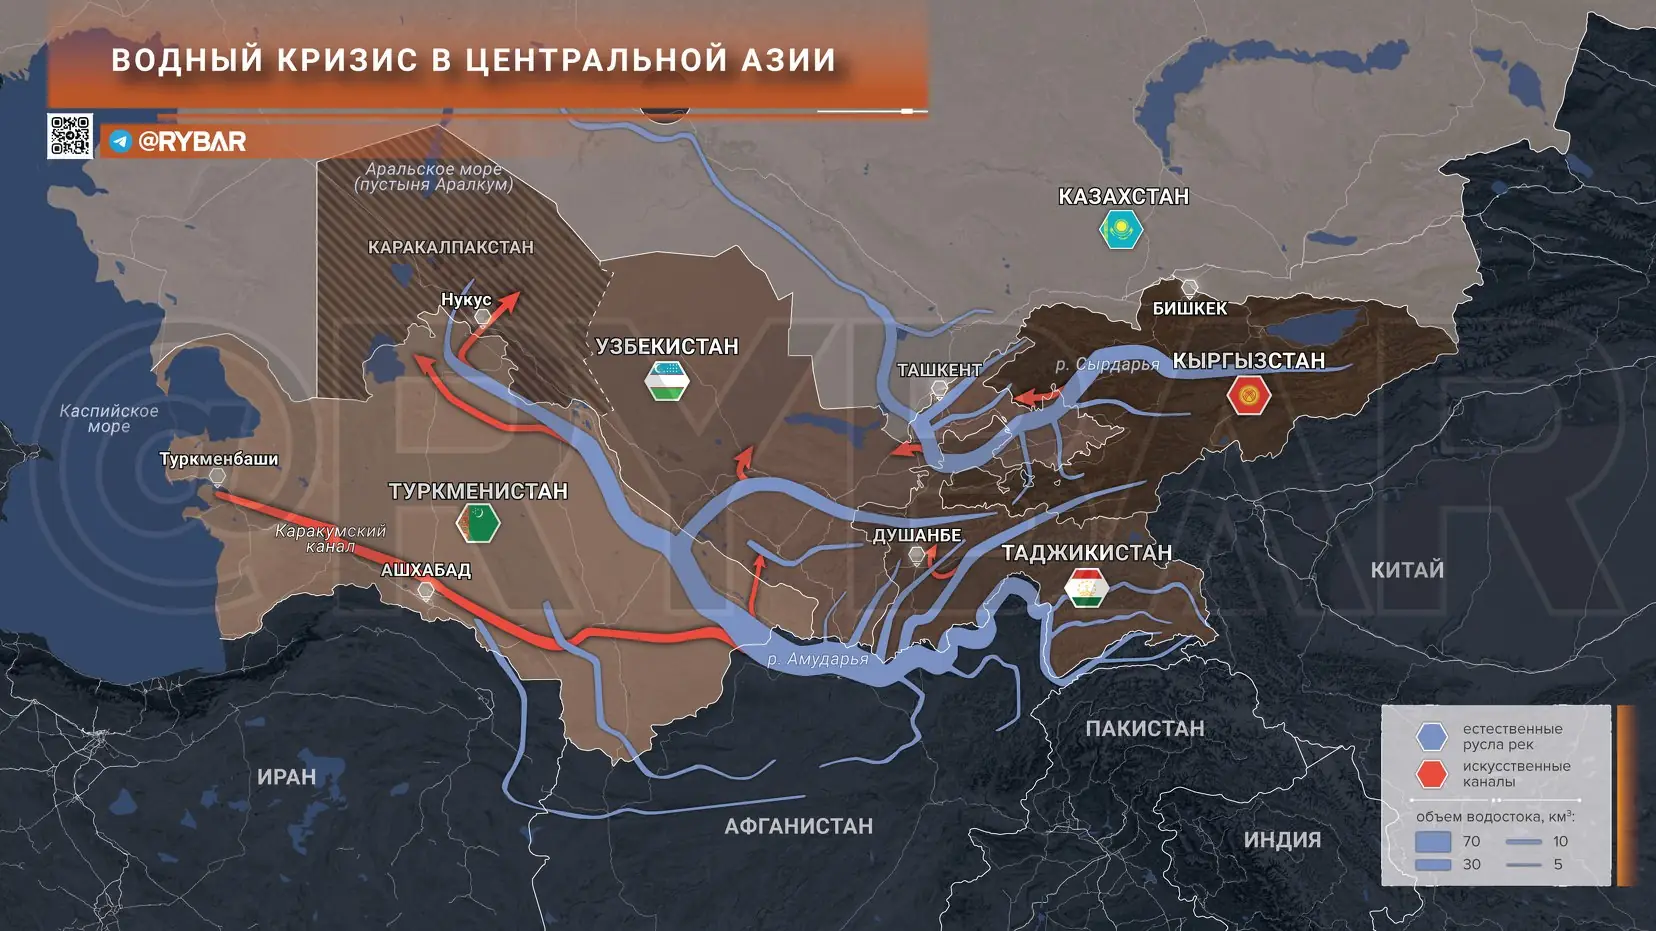 Как нехватка водных ресурсов влияет на стабильность в Центральной Азии